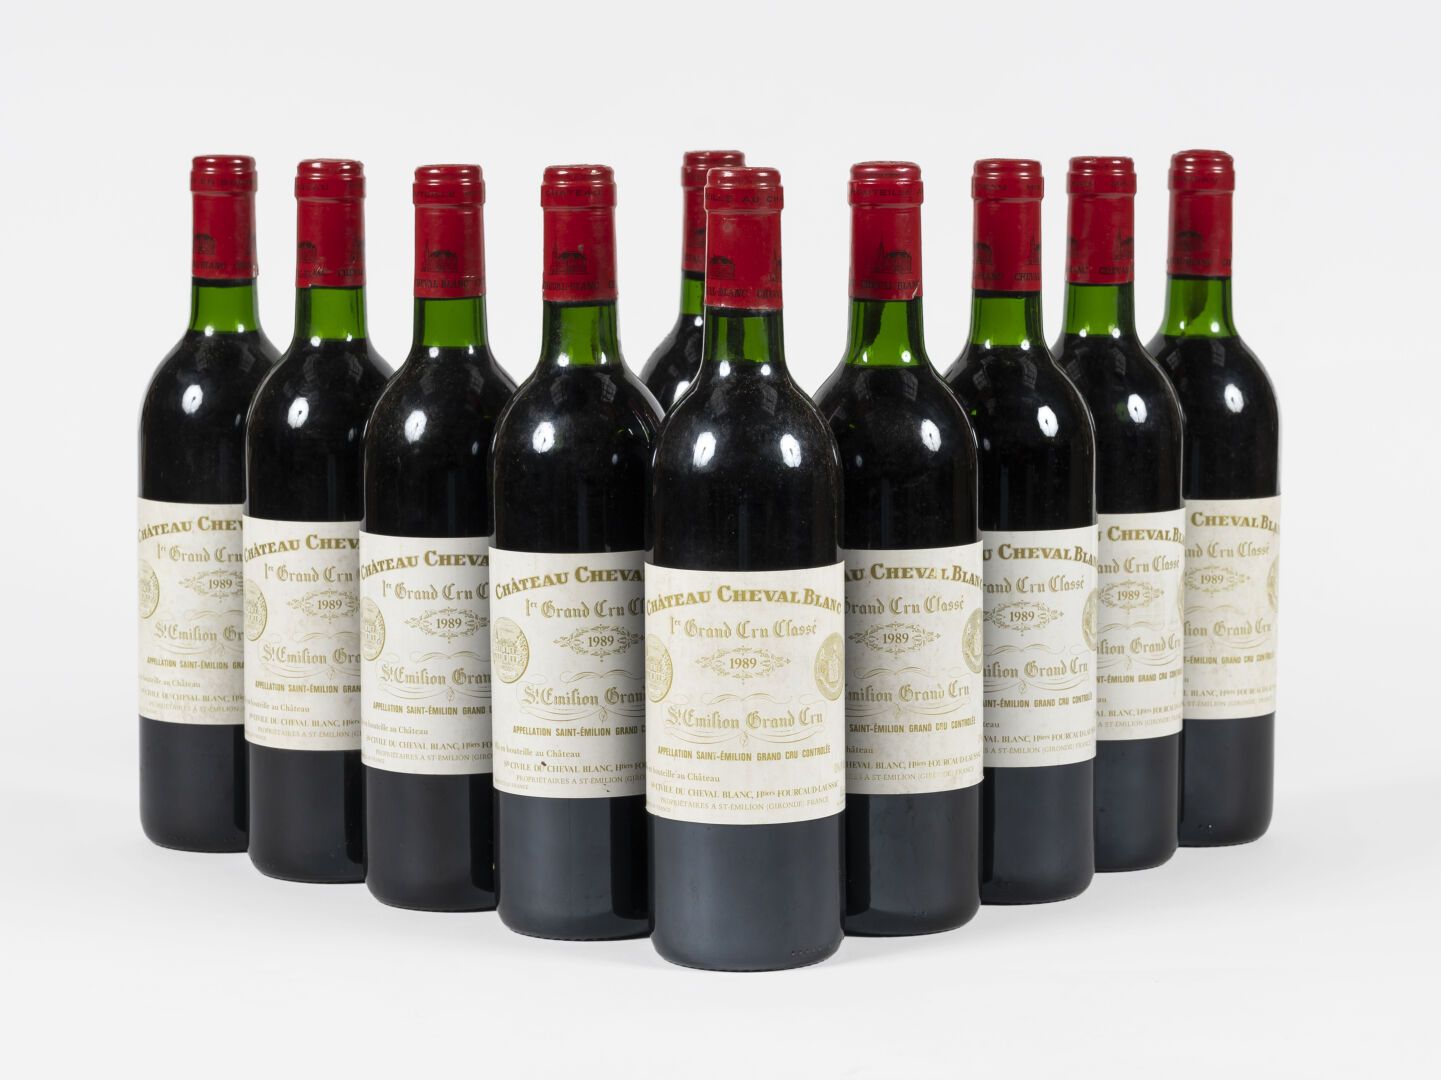 10 bouteilles Château Cheval Blanc 1989 10 bouteilles Château Cheval Blanc 1989
&hellip;